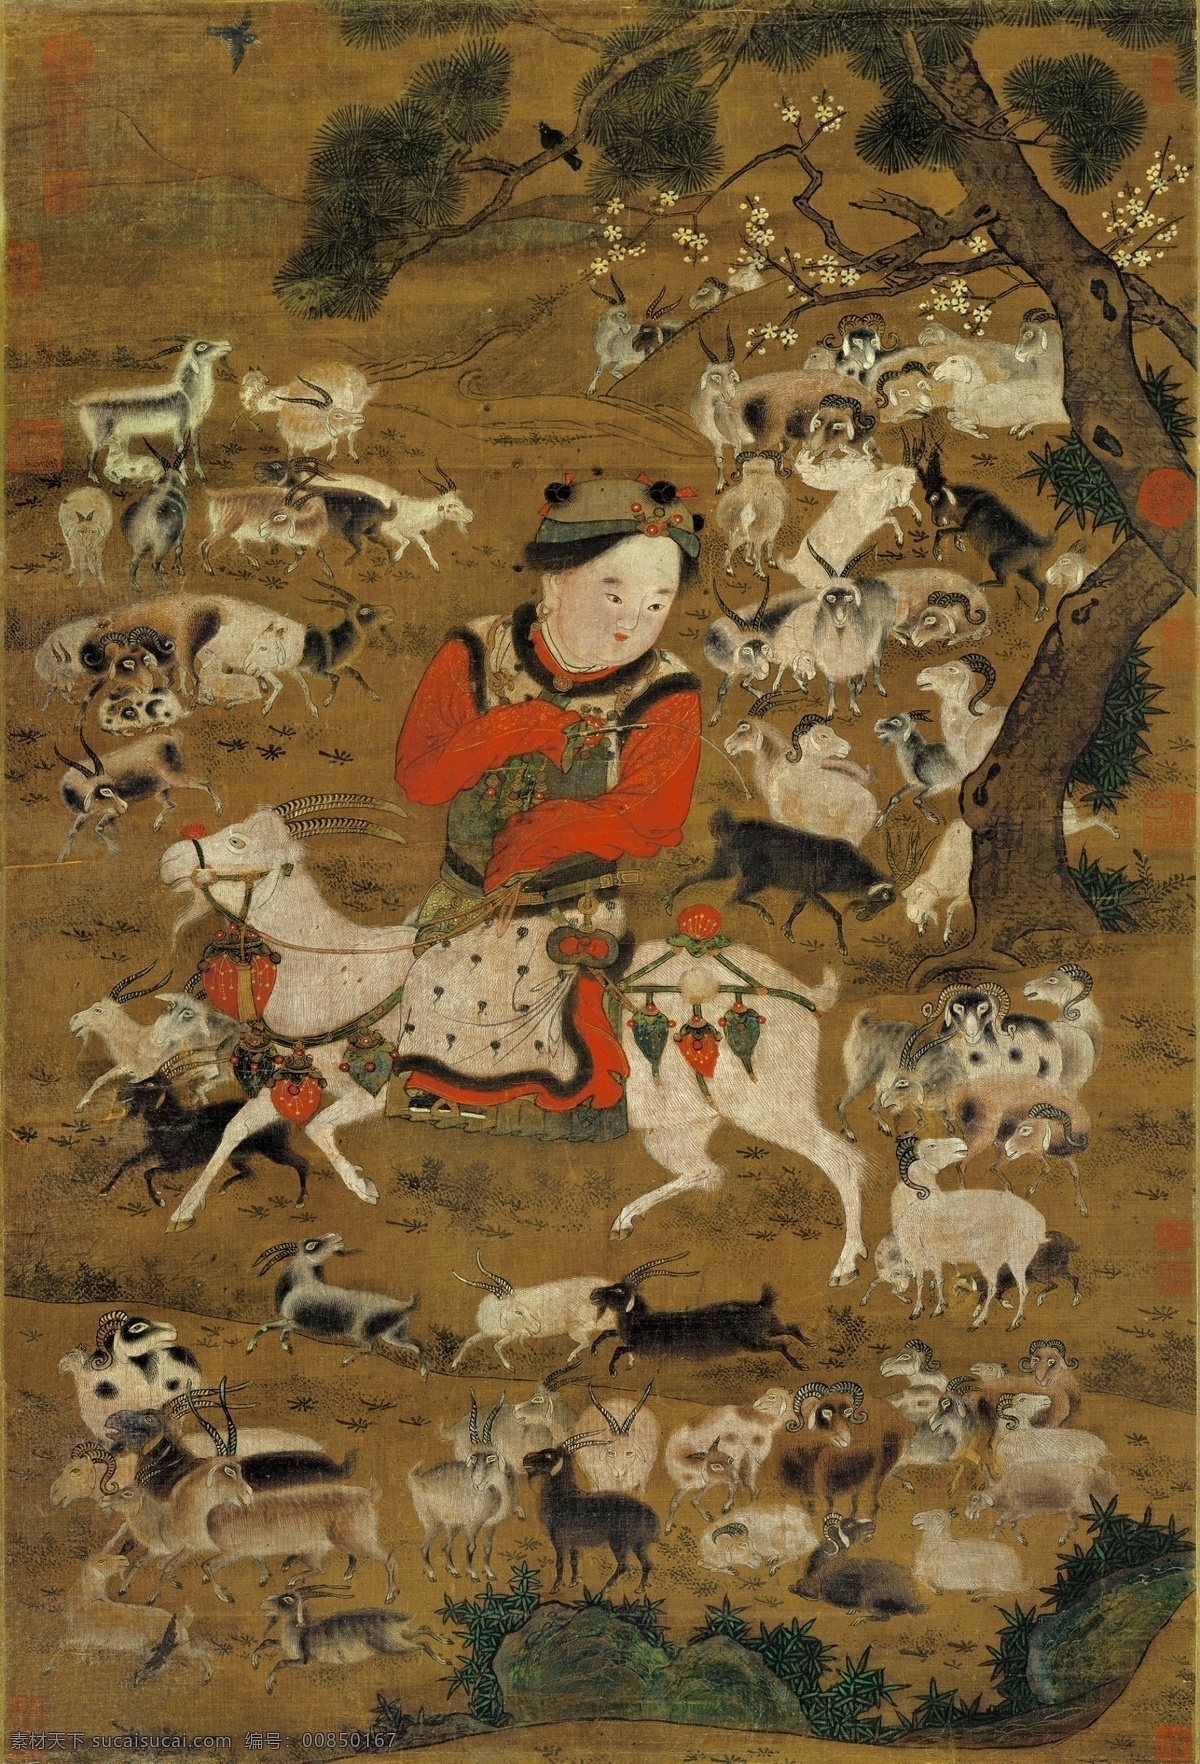 坐拥羊财 开泰图 羊年 羊财 发羊财 领头羊 中国画 古代绘画 装饰画 油画 无框画 羊素材 中国古代绘画 文化艺术 绘画书法